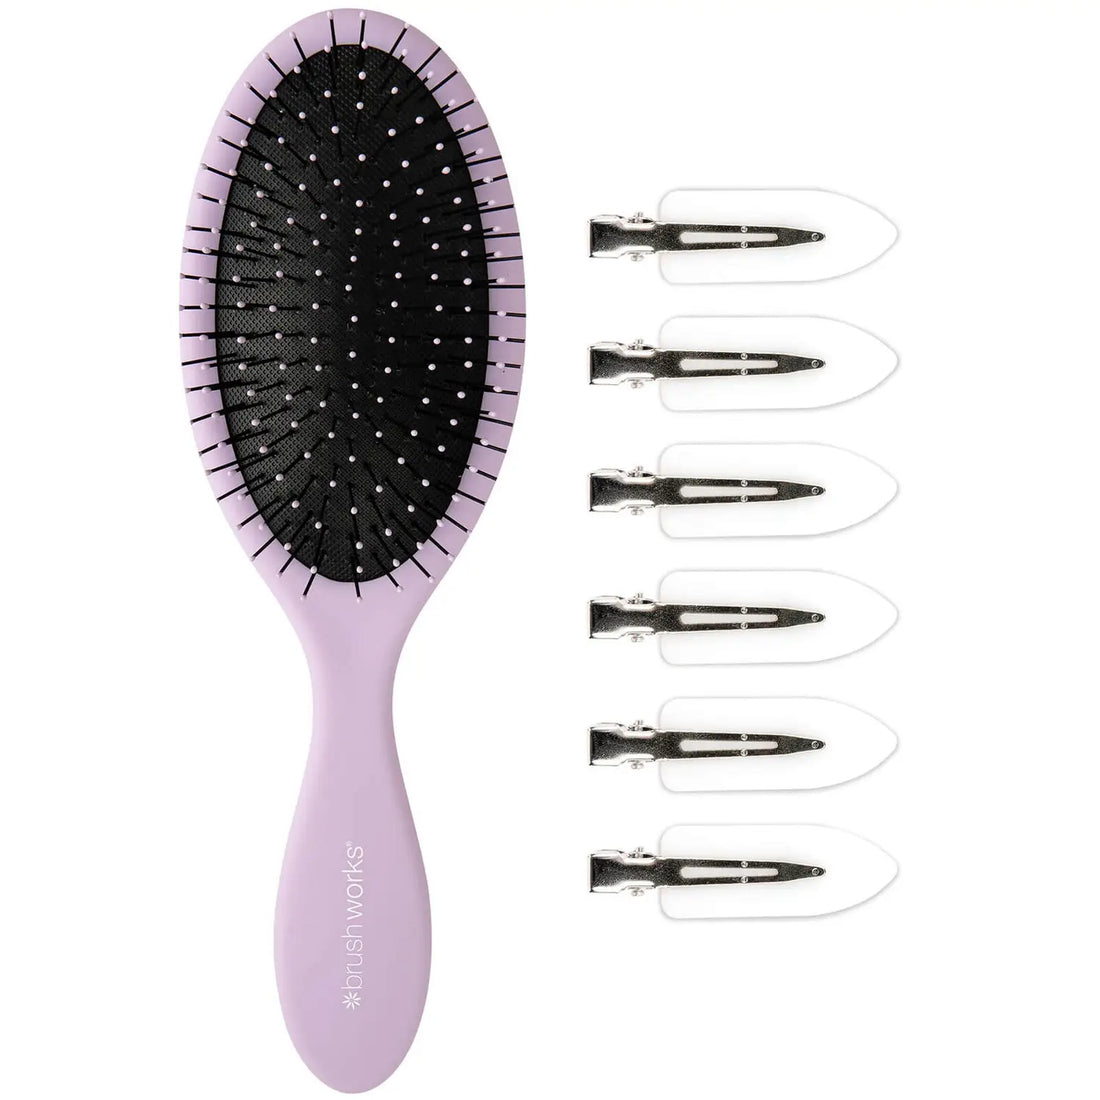 Brushworks Luxury Hair Styling Set